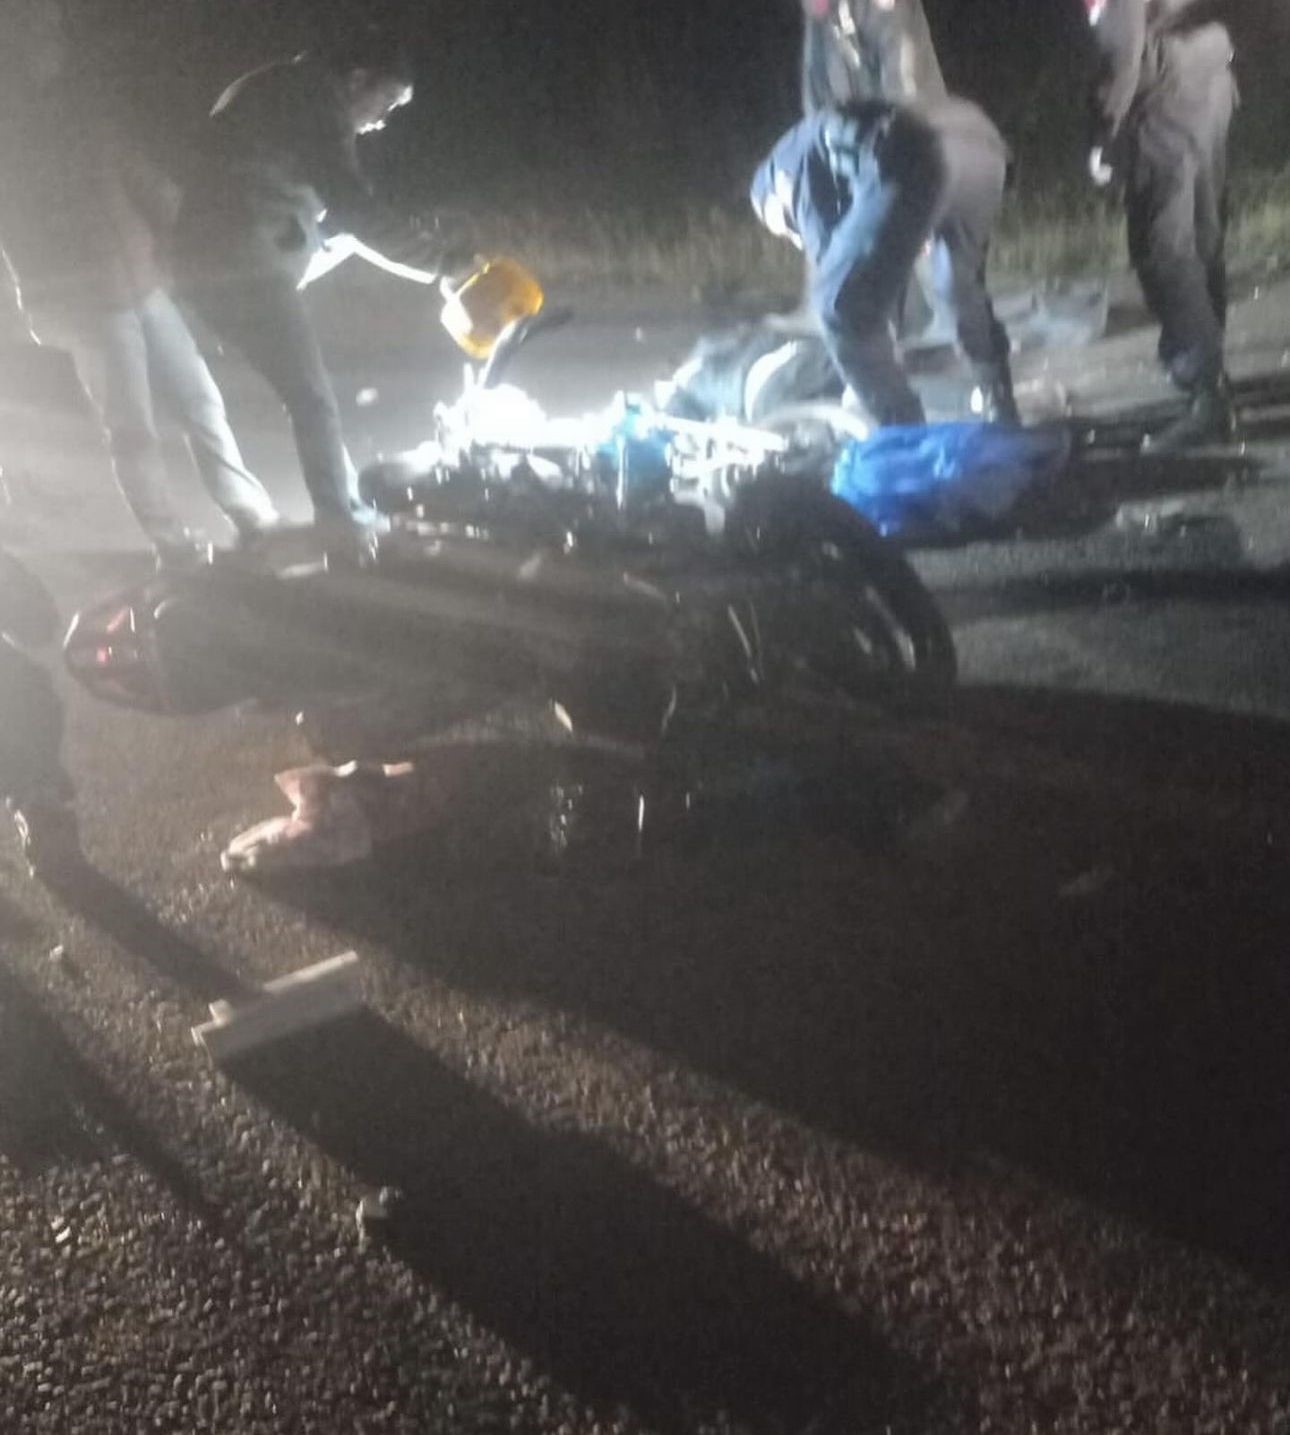 Yalova’da 2 motosiklet kafa kafaya çarpıştı: 1 ölü, 3 yaralı
